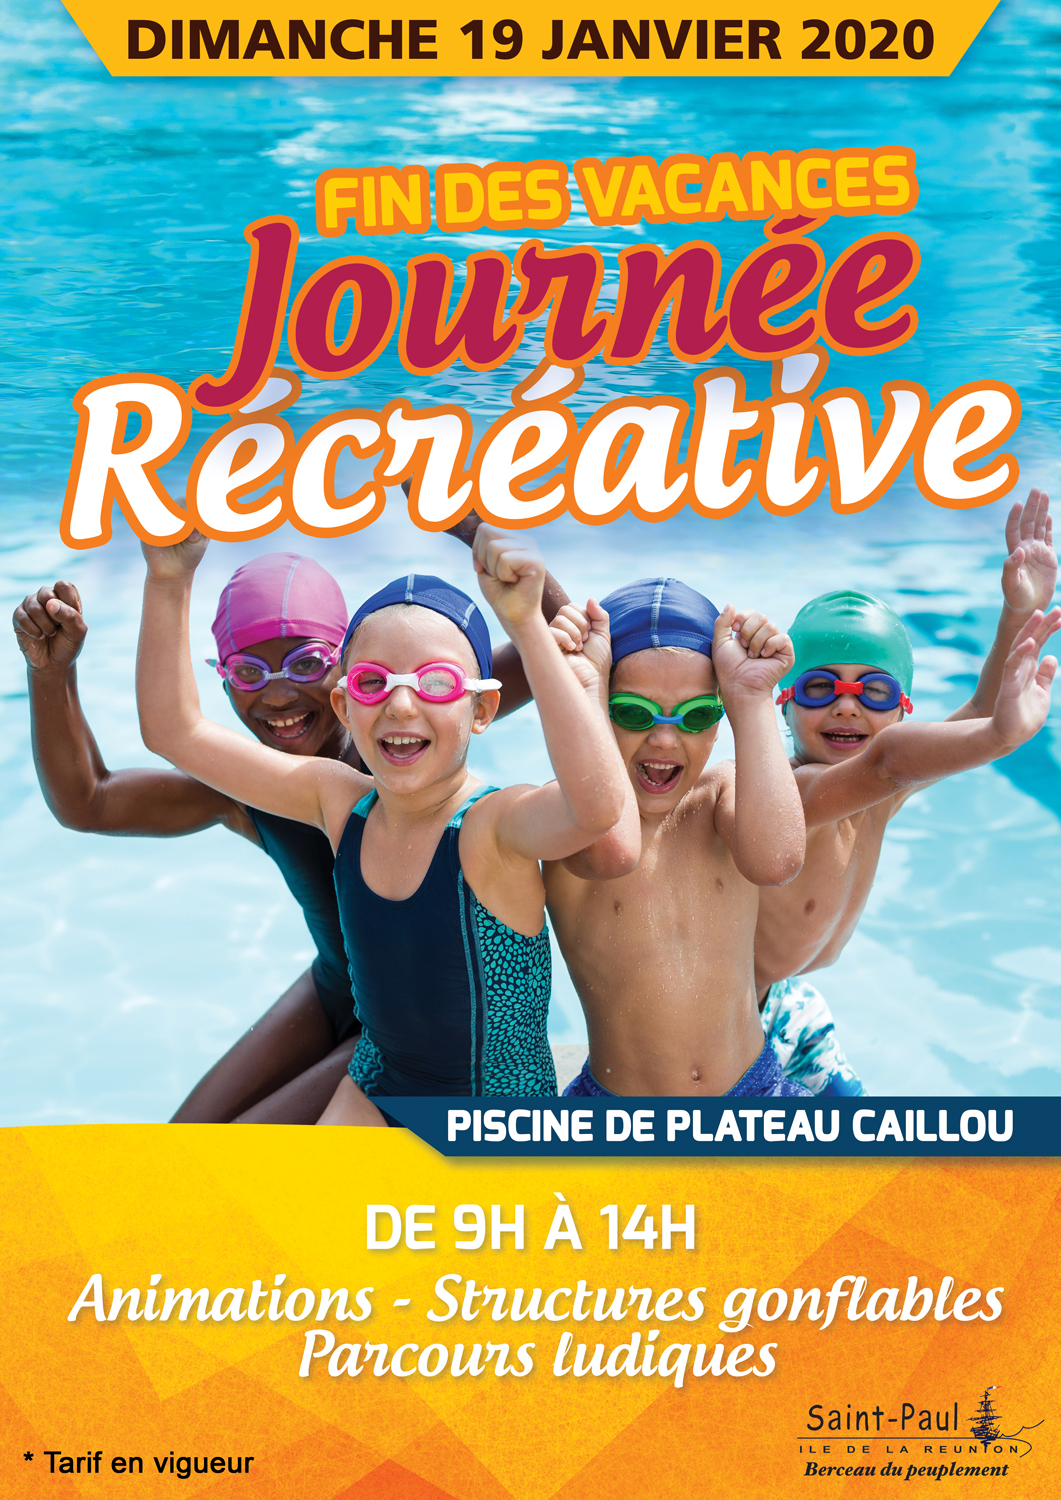 Une journée récréative organisée à la piscine de Plateau Caillou